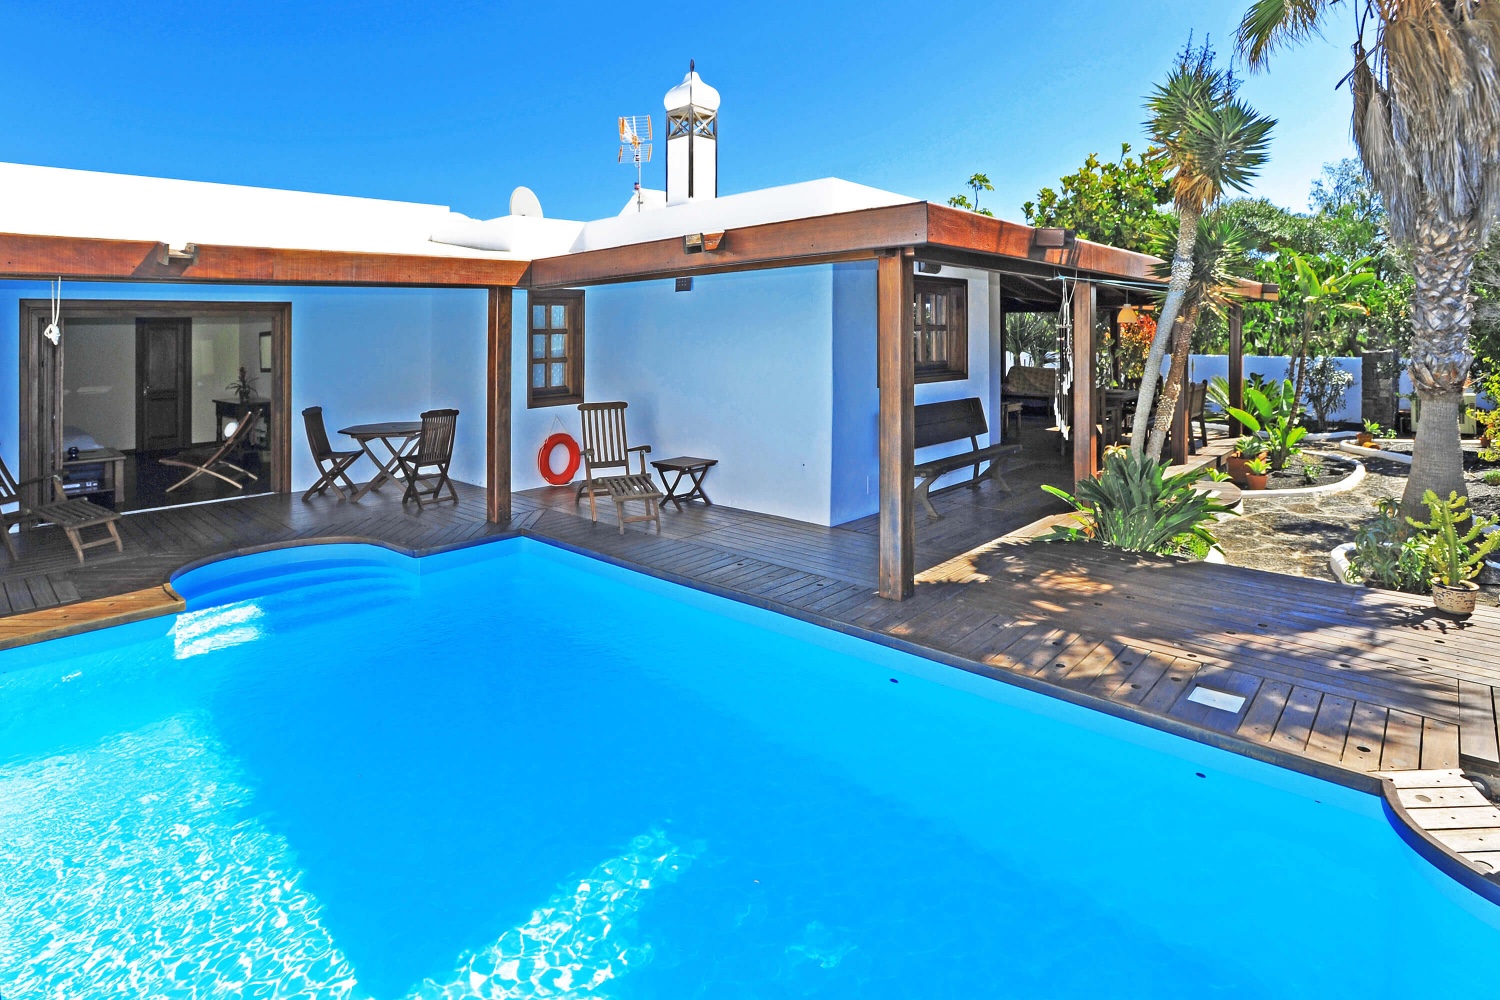 Krásný dům v rustikálním stylu pro vaši dovolenou na Lanzarote, s krásnou zahradou a soukromým bazénem v blízkosti pláže a golfového hřiště v Costa Teguise